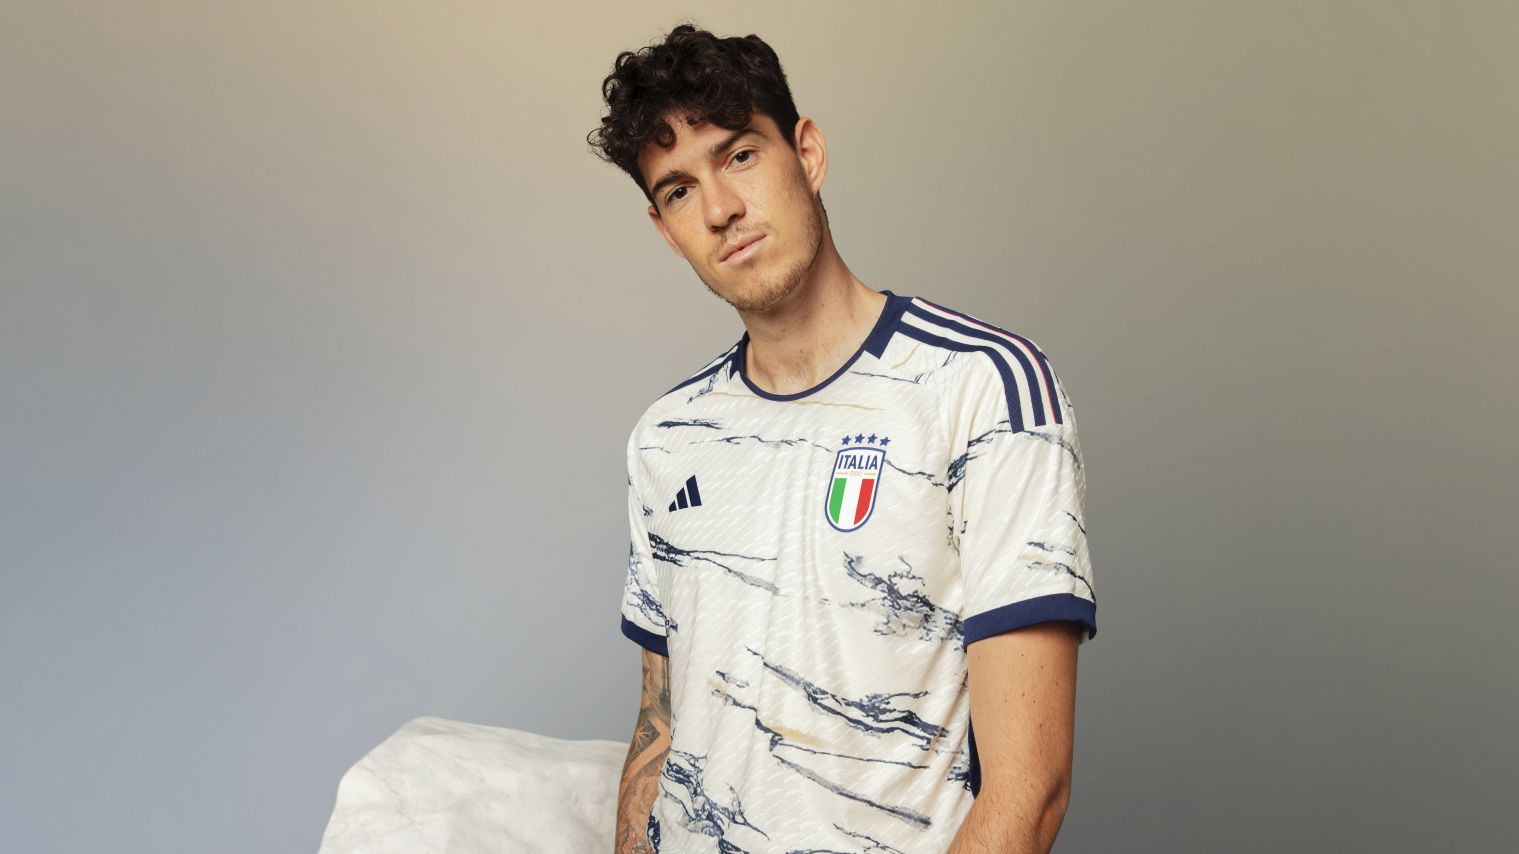 Ecco la nuova maglia della Nazionale by Adidas: è ispirata al